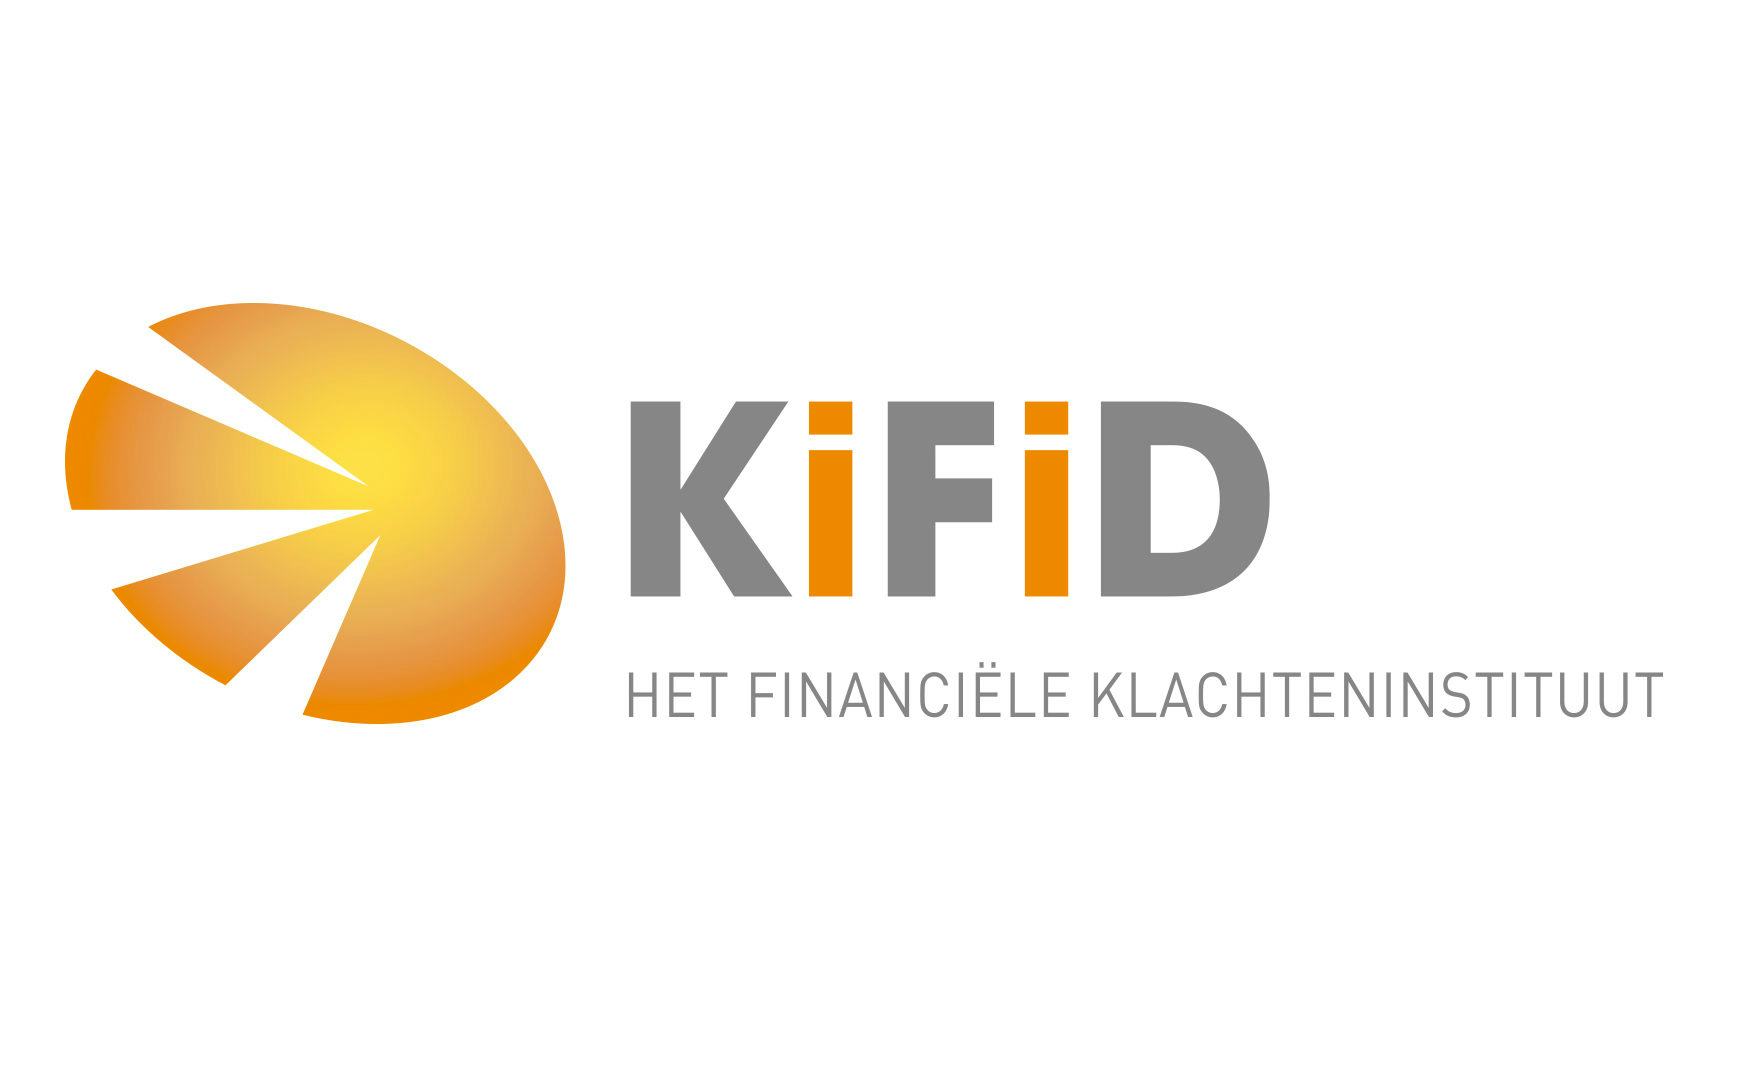 Kifid: Centrale organisatie verantwoordelijk voor fout franchisenemer